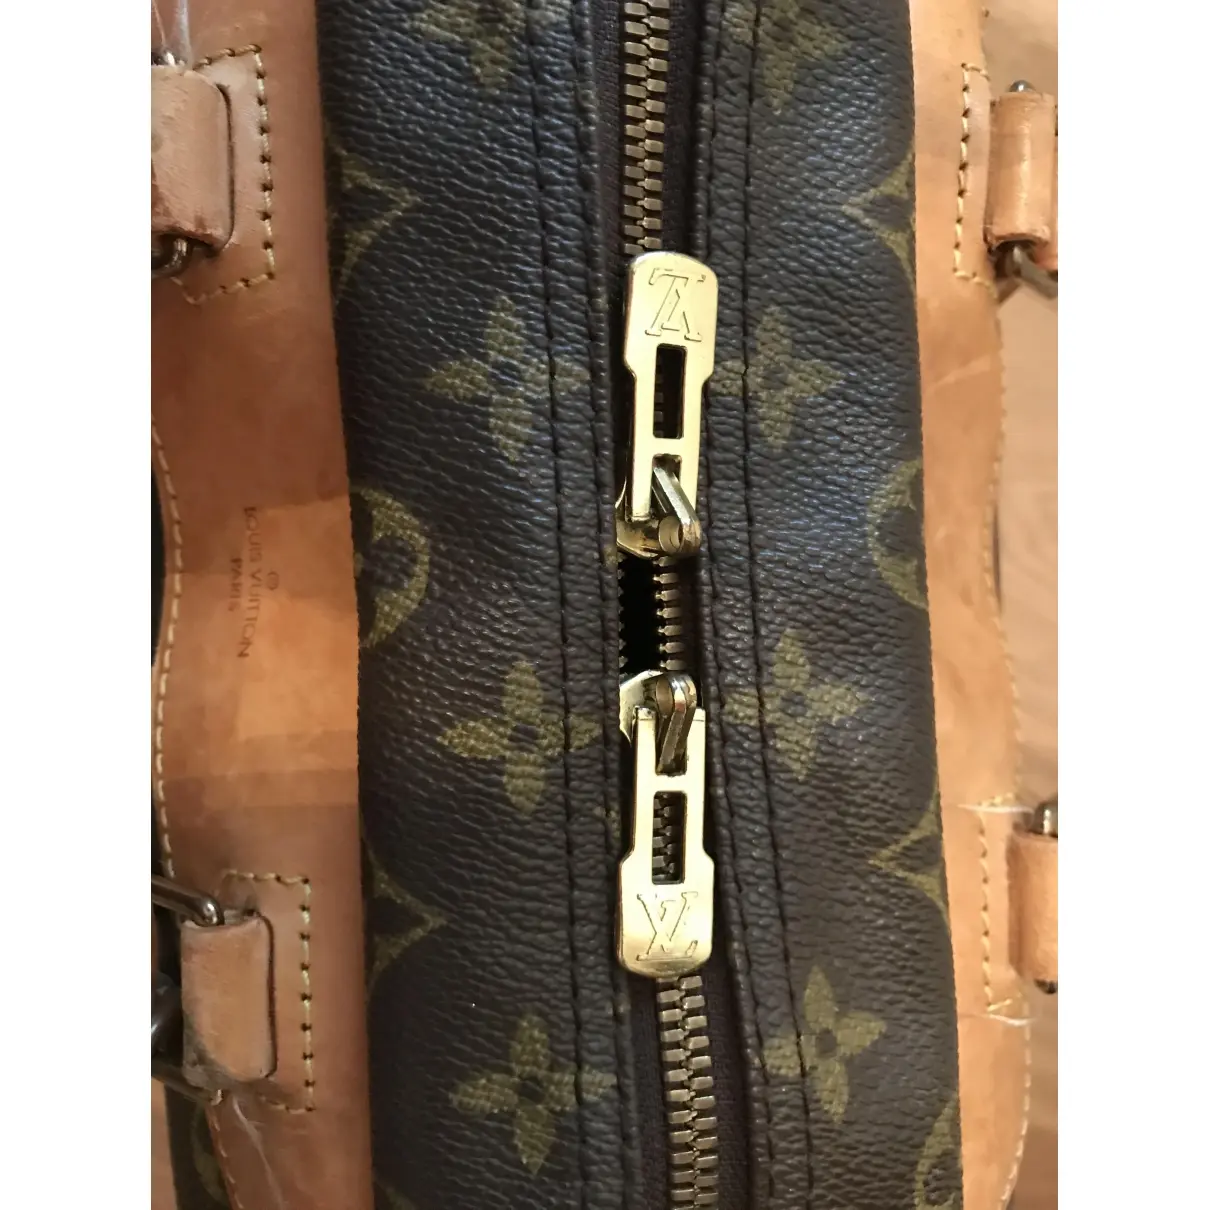 Buy Louis Vuitton Deauville cloth handbag online - Vintage